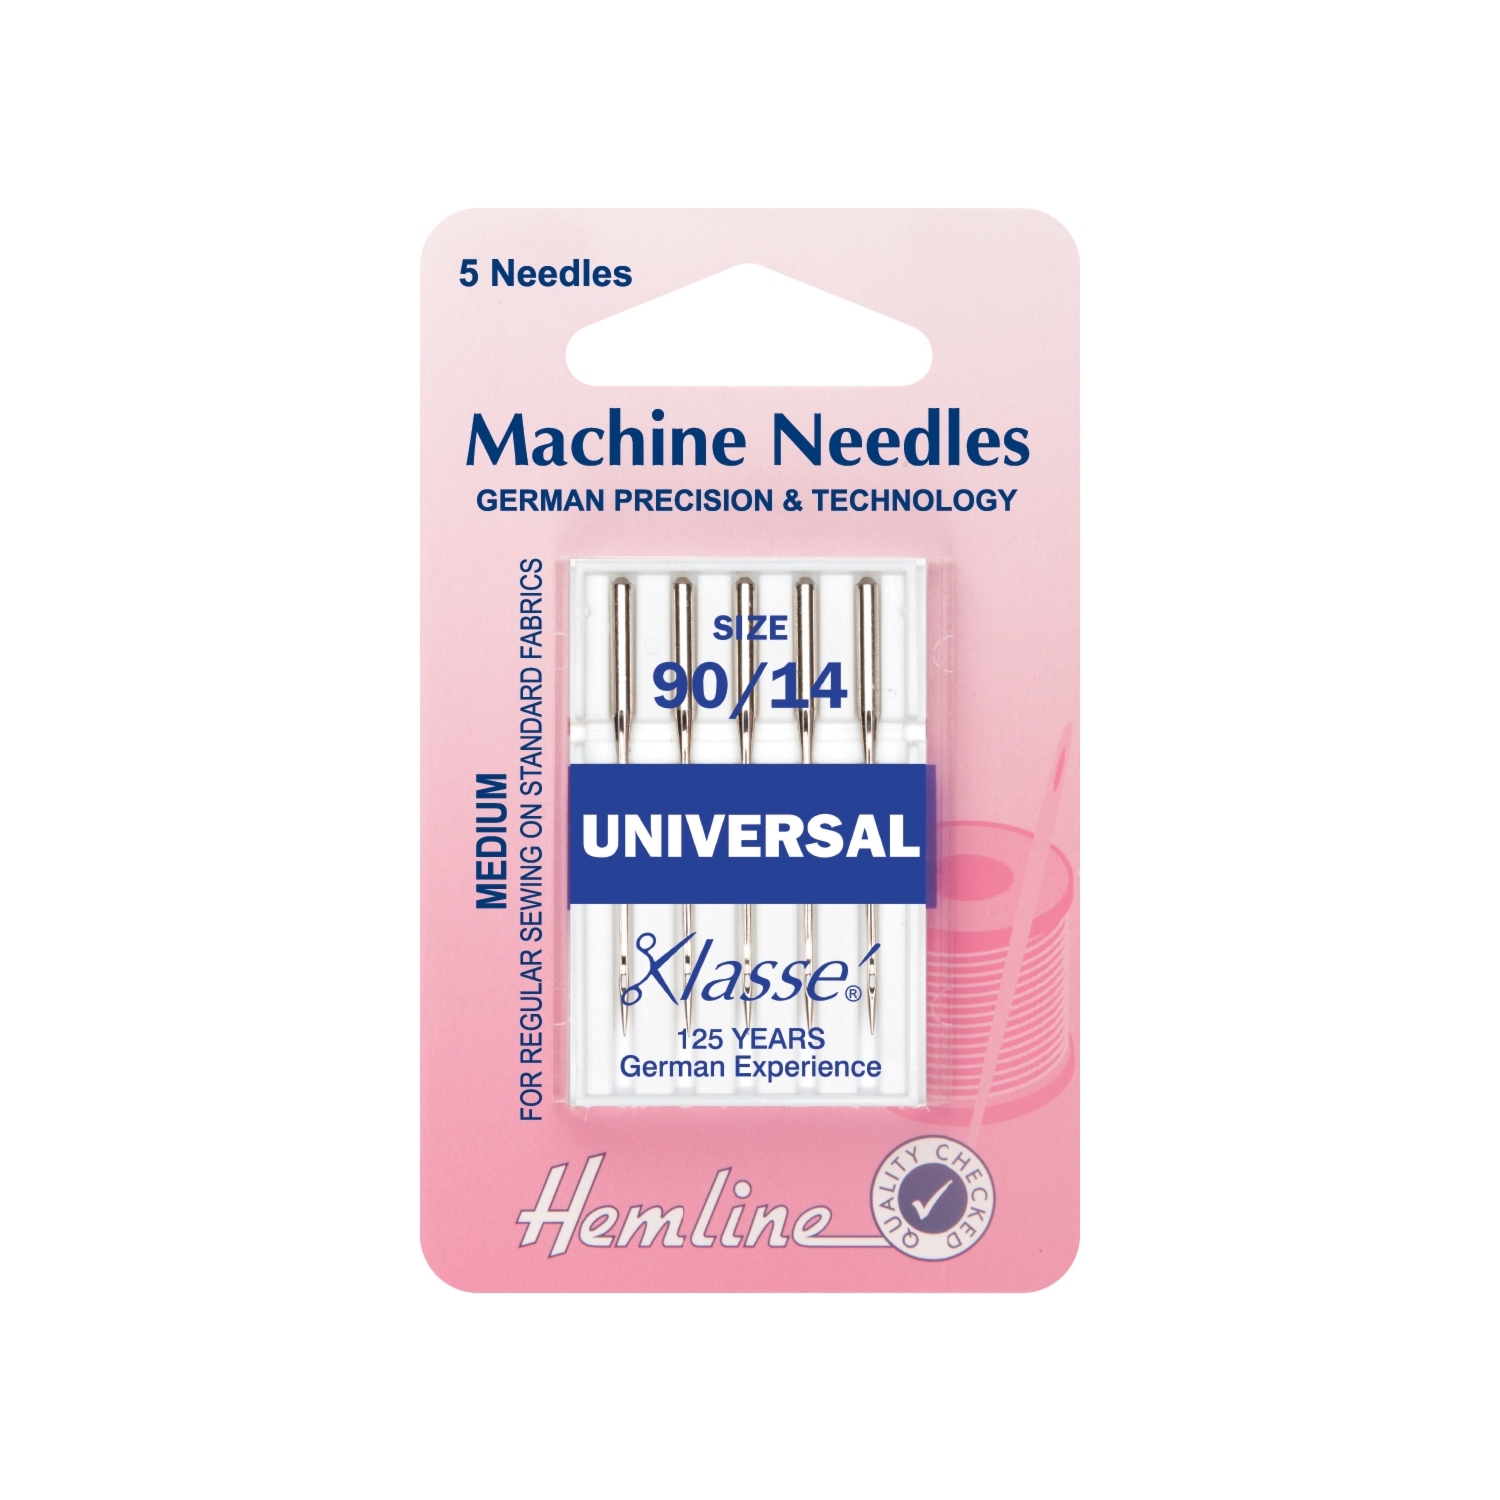 Hemline Heavy Universal Machine Needles - Size 90 / 14 Image